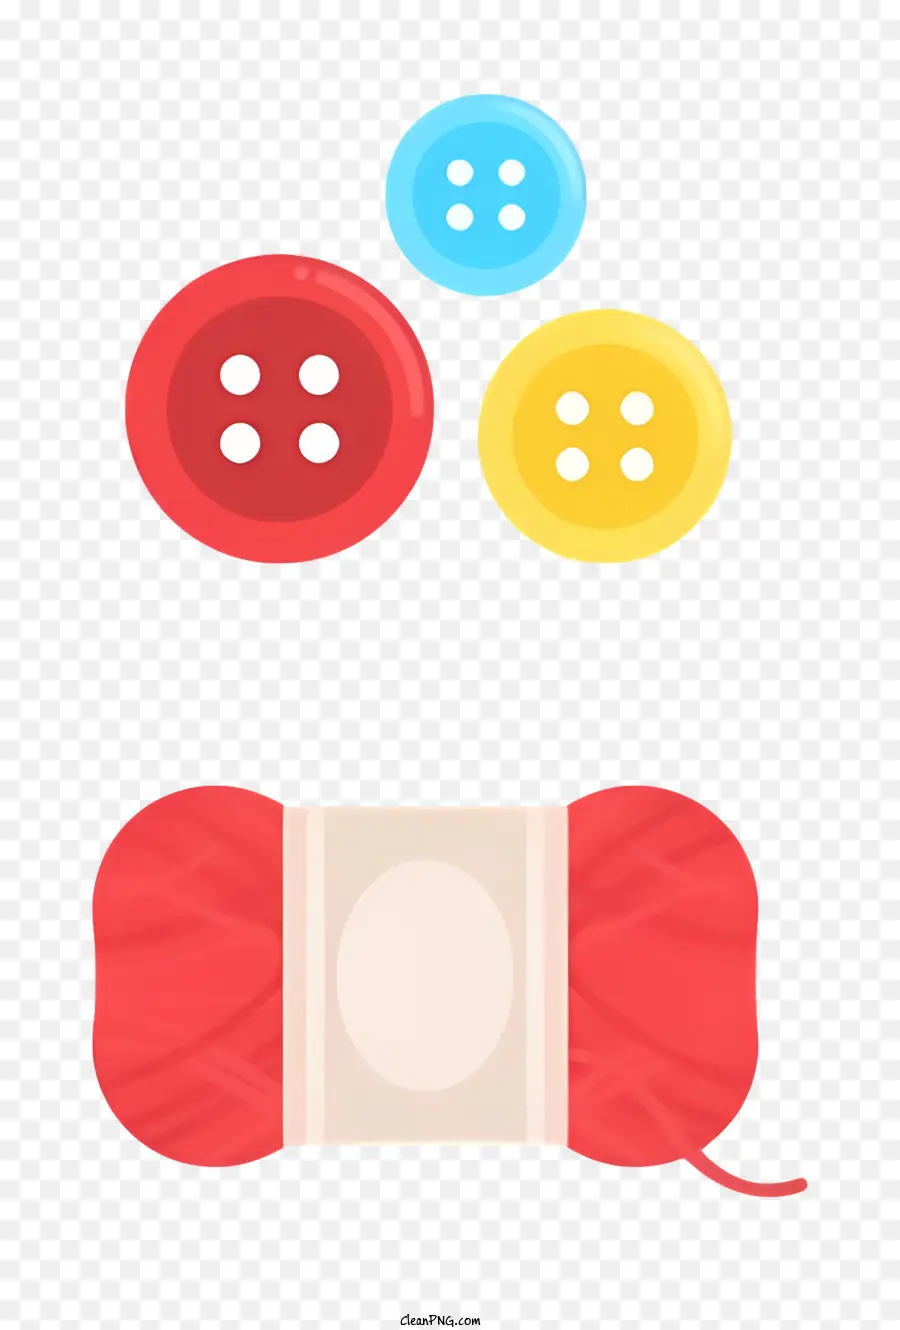 Biểu tượng sợi bóng nút màu đỏ - Bóng sợi màu đỏ với các nút theo hàng